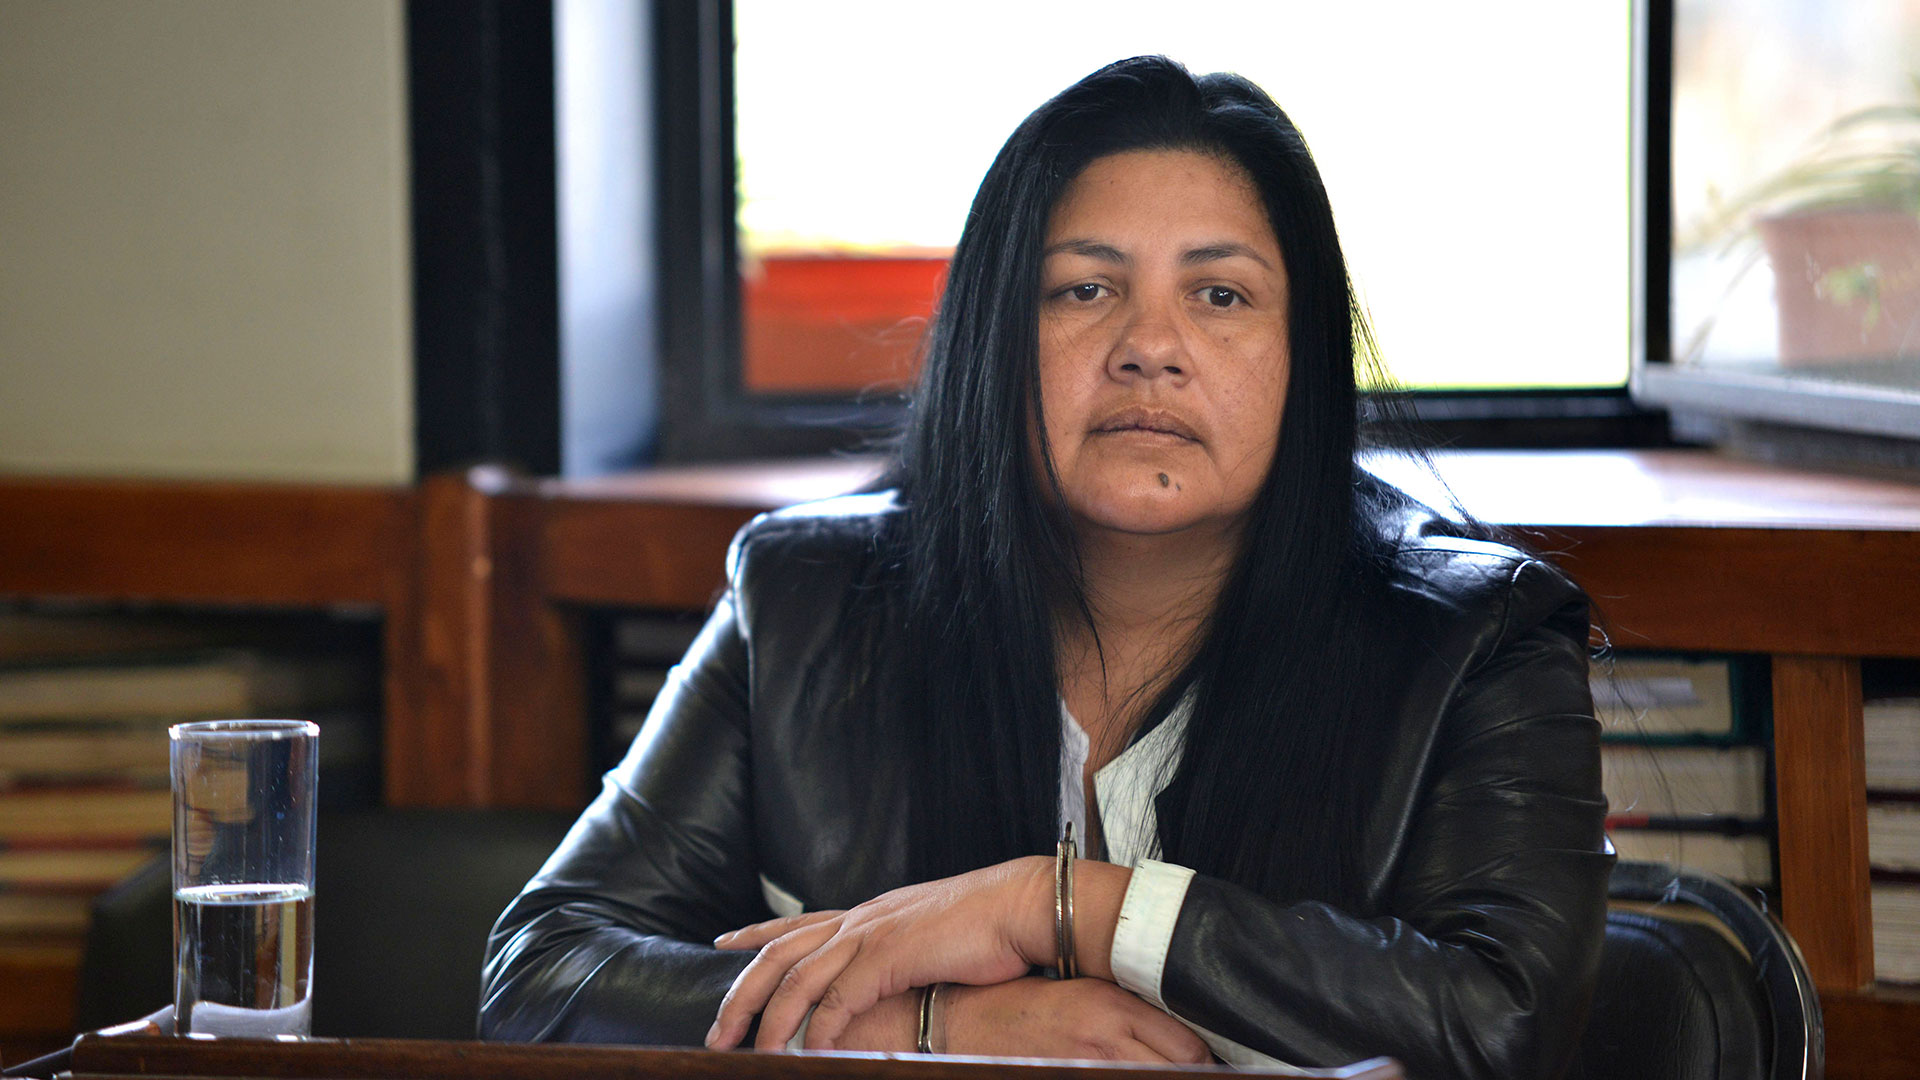 Mirta Guerrero, la ex colaboradora de Milagro Sala, reveló el dinero que manejaba la dirigente social y el poder que tenía